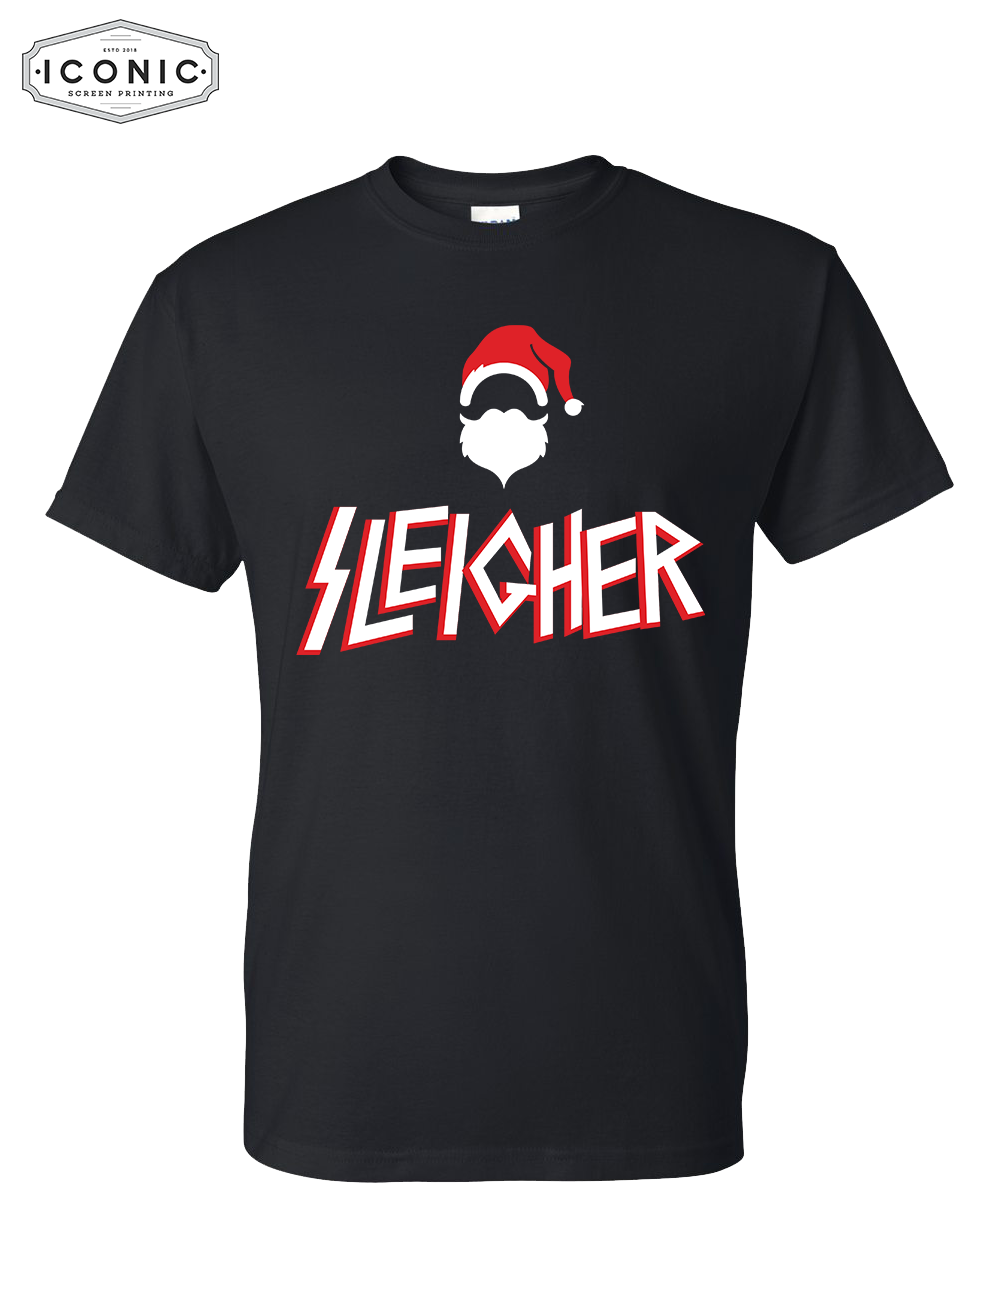 SLEIGHER - DryBlend T-shirt